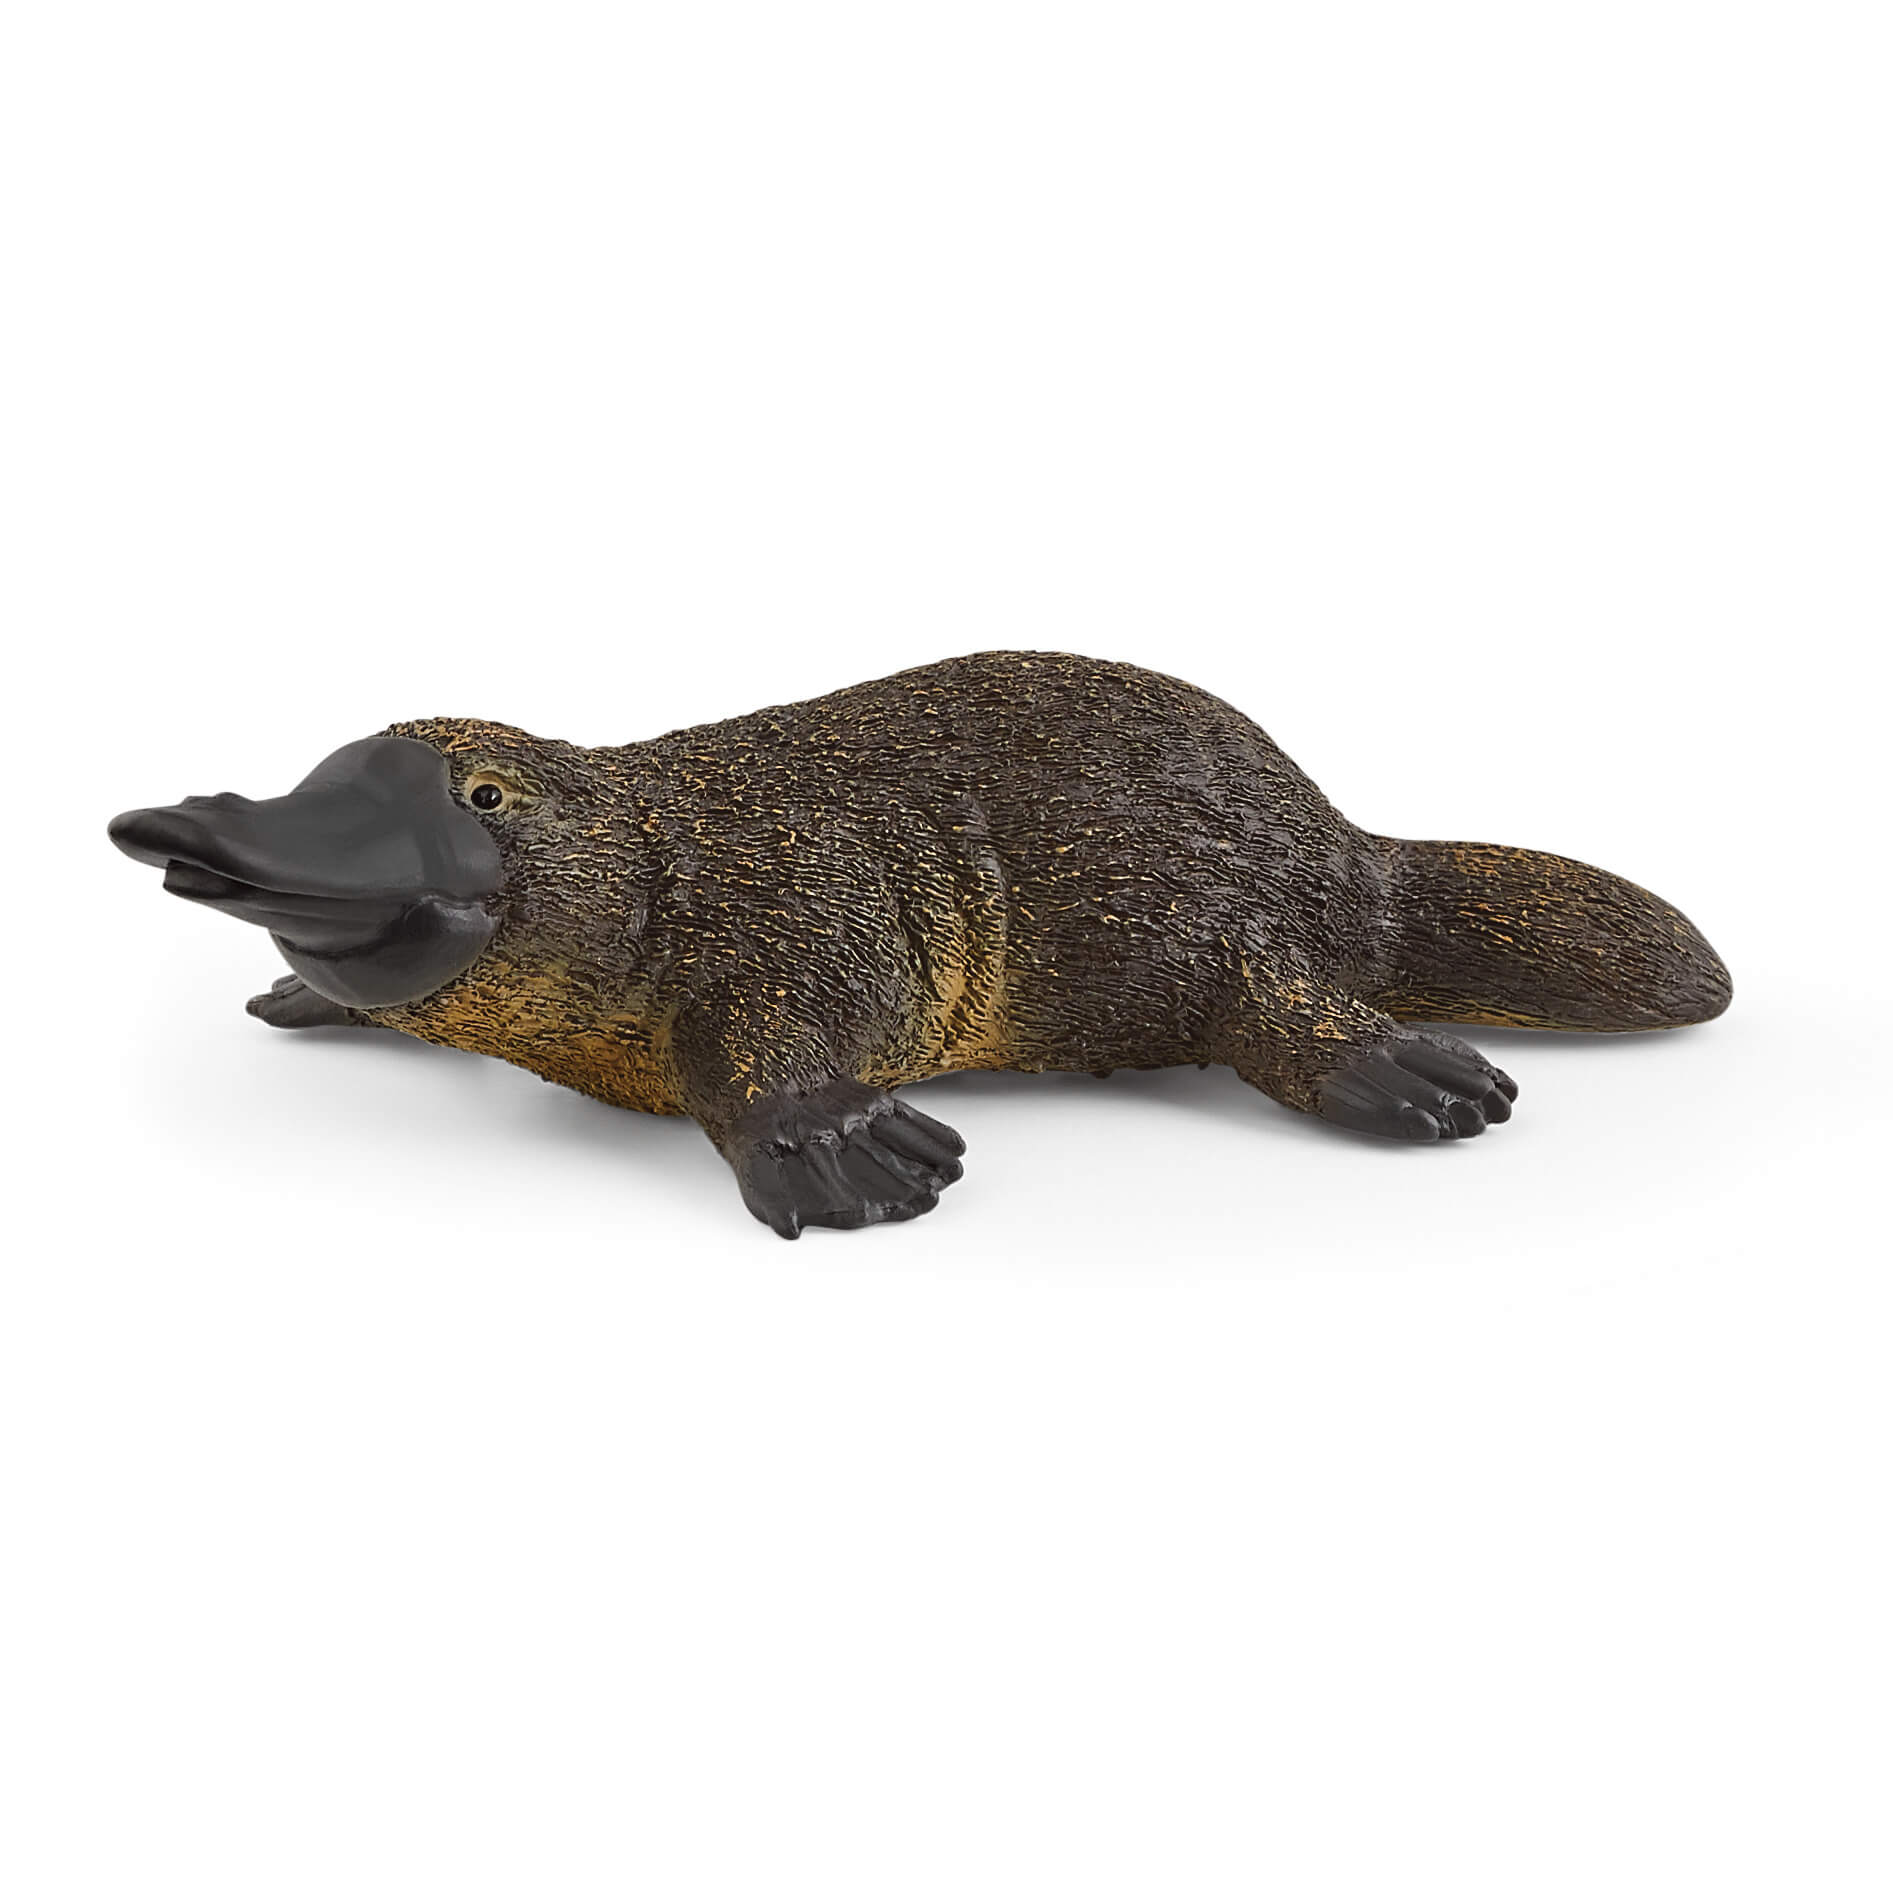 Schleich Wild Life Platypus Animal Figure (14840)